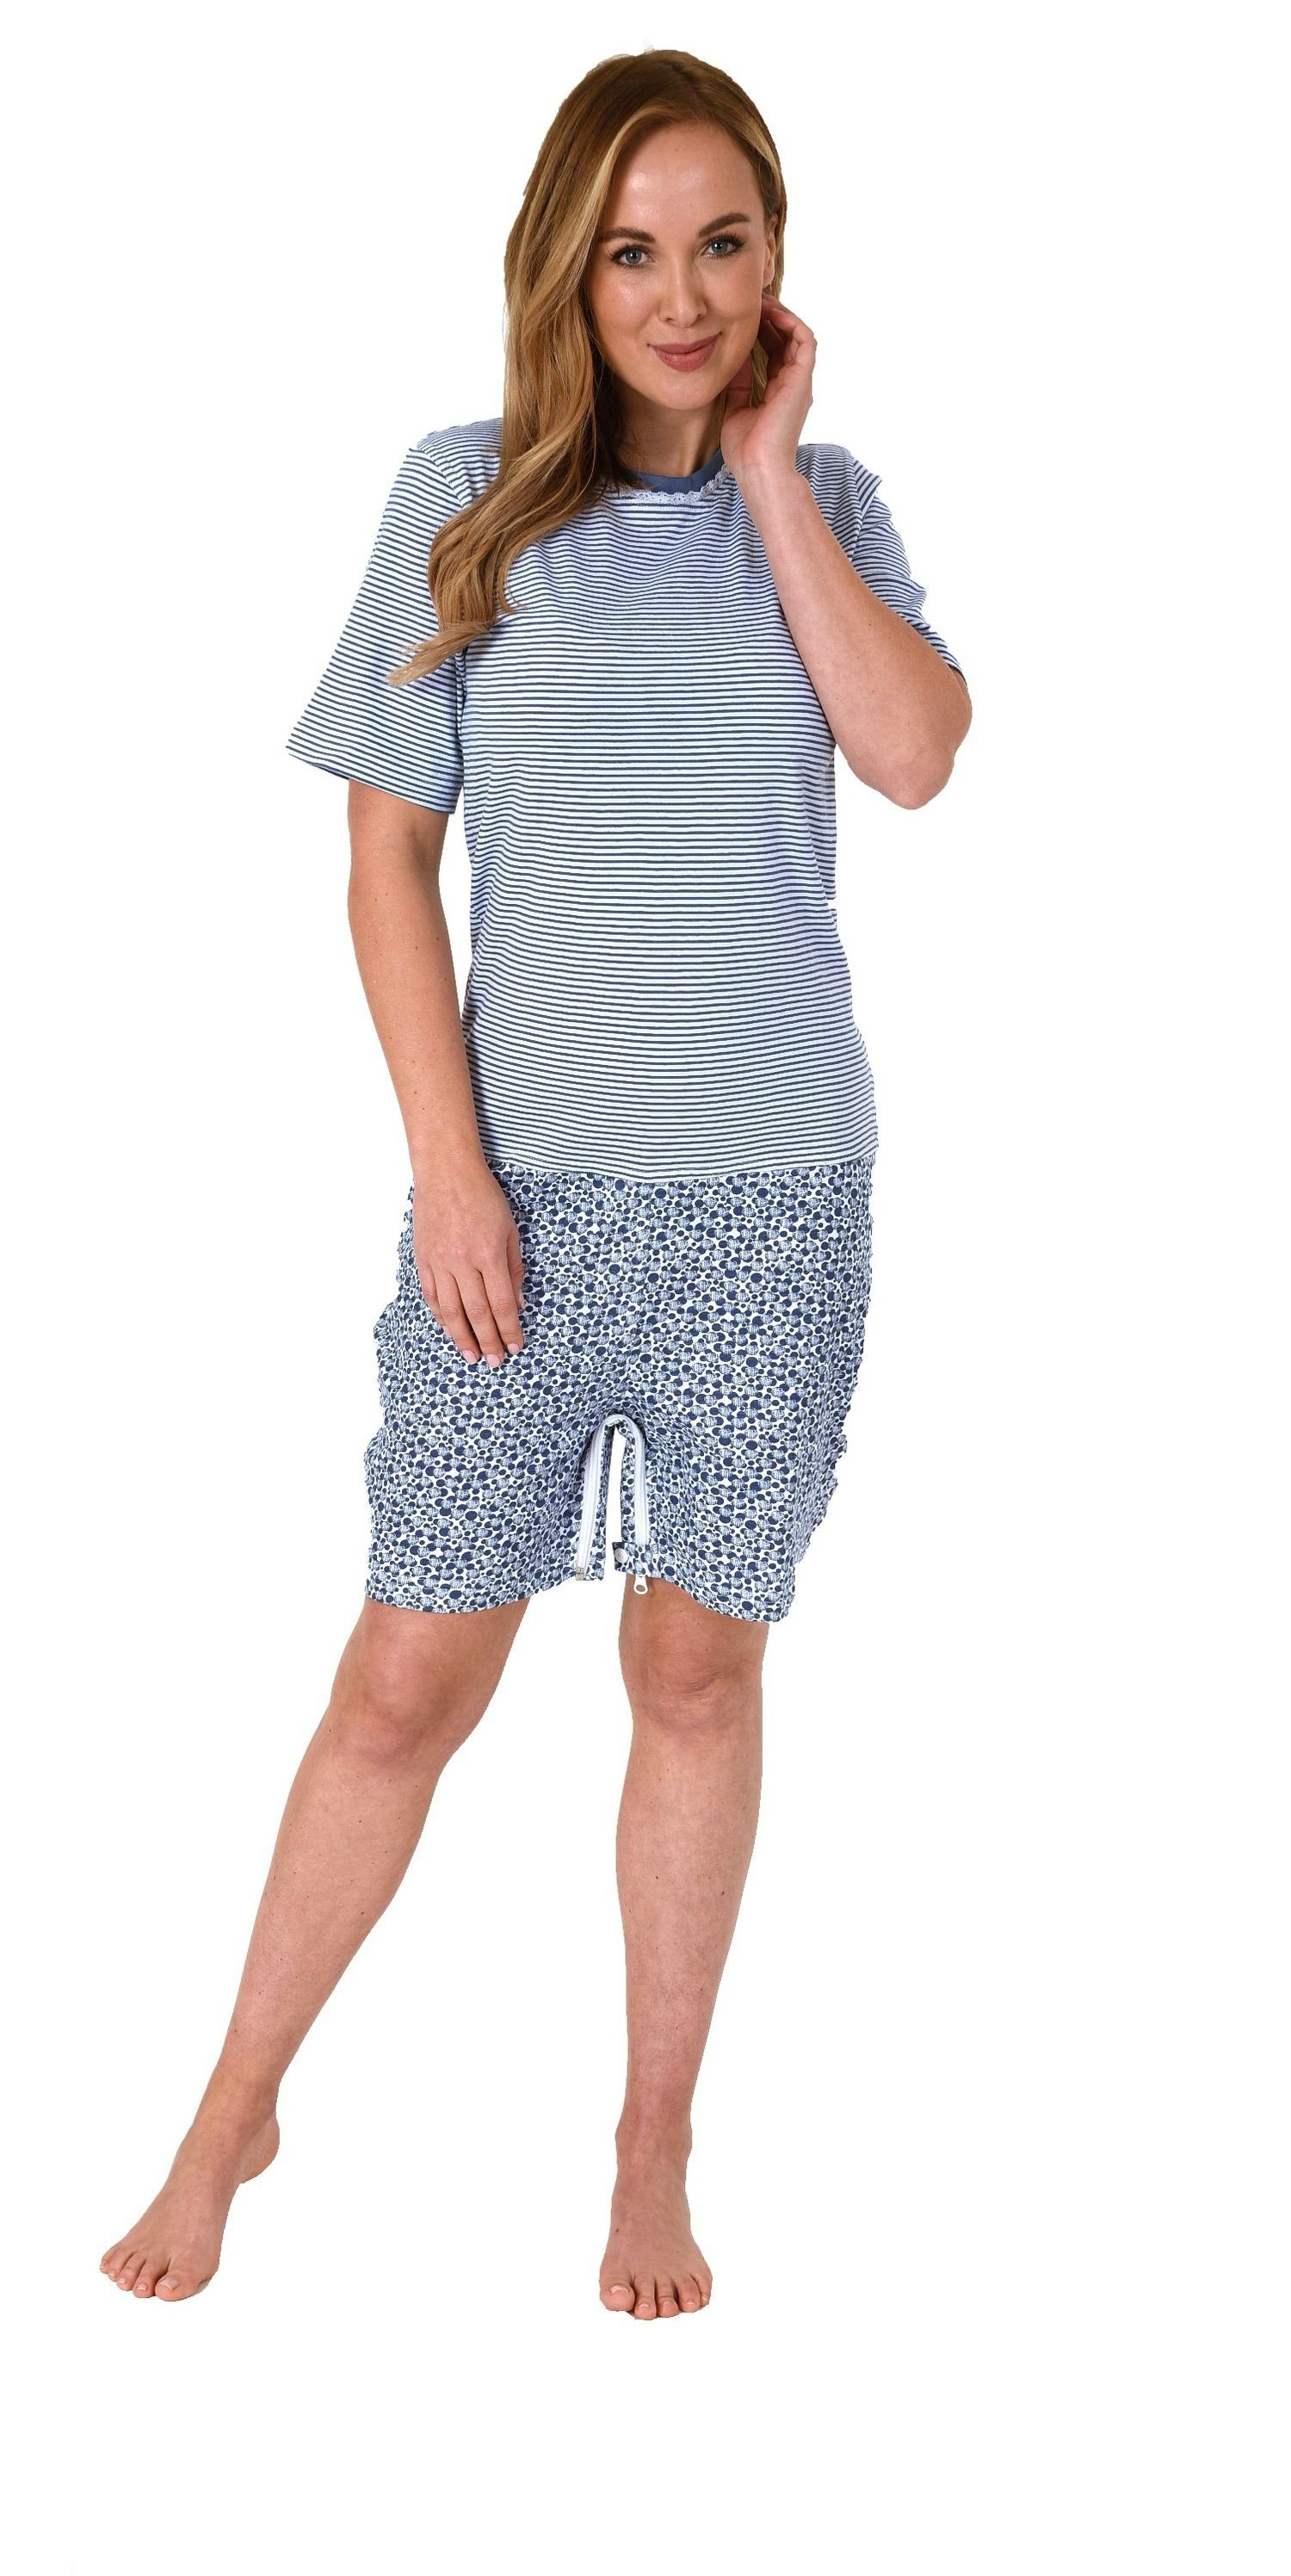 Normann Care Pyjama Damen Pflegeoverall kurzarm mit Reissverschluss am Rücken und am Bein